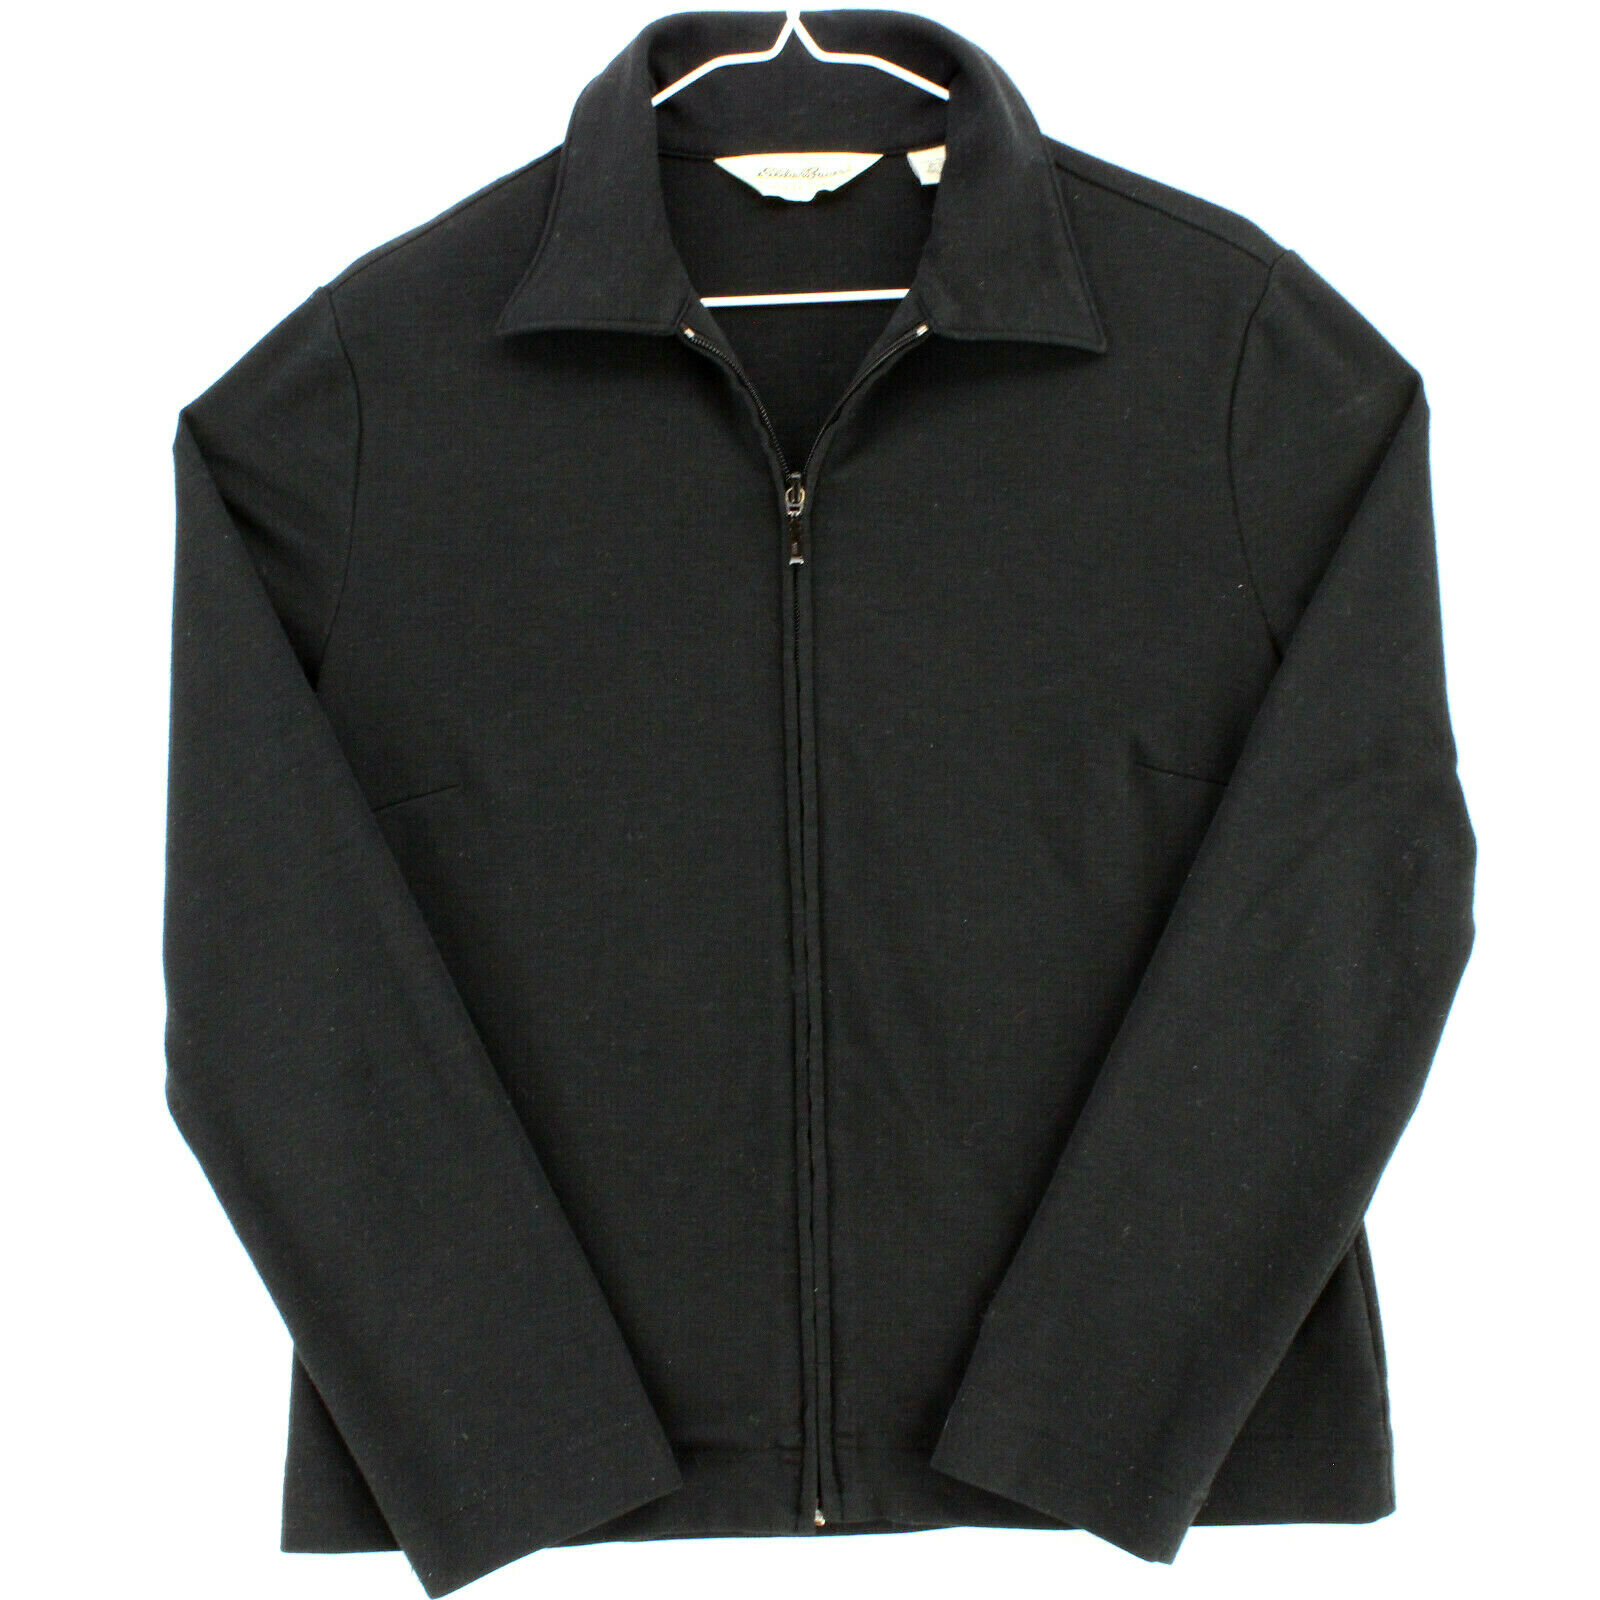 Eddie Bauer Activewear Black Zip Warm Up Running Jacket Women's M Medium